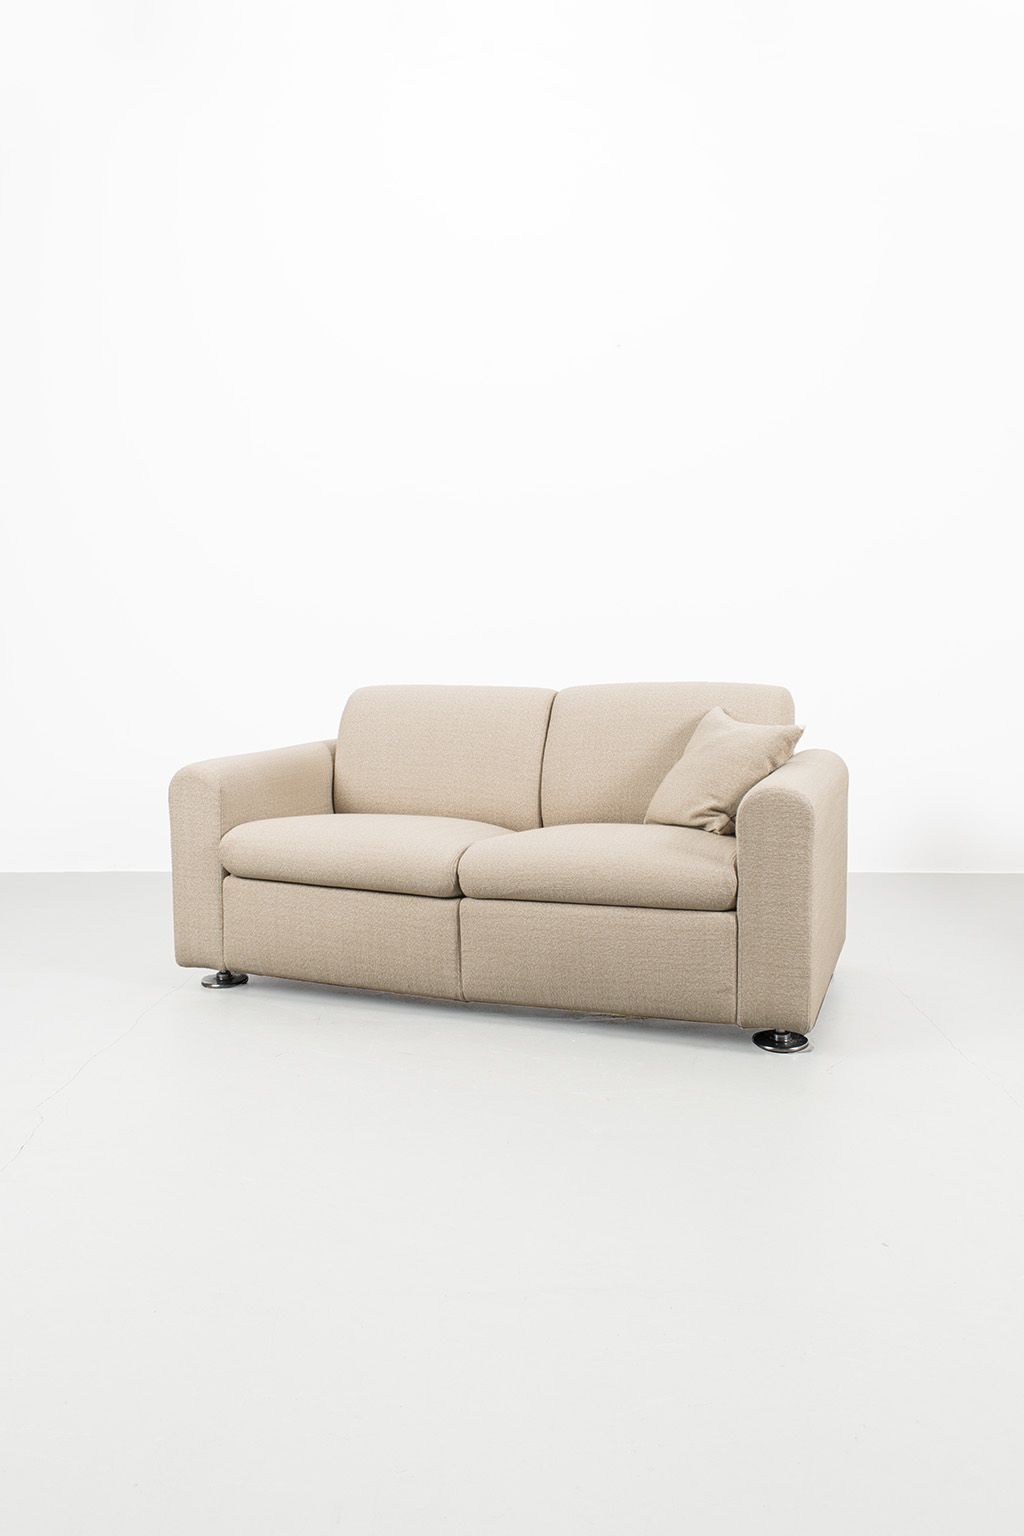 Artifort 2-seat sofa